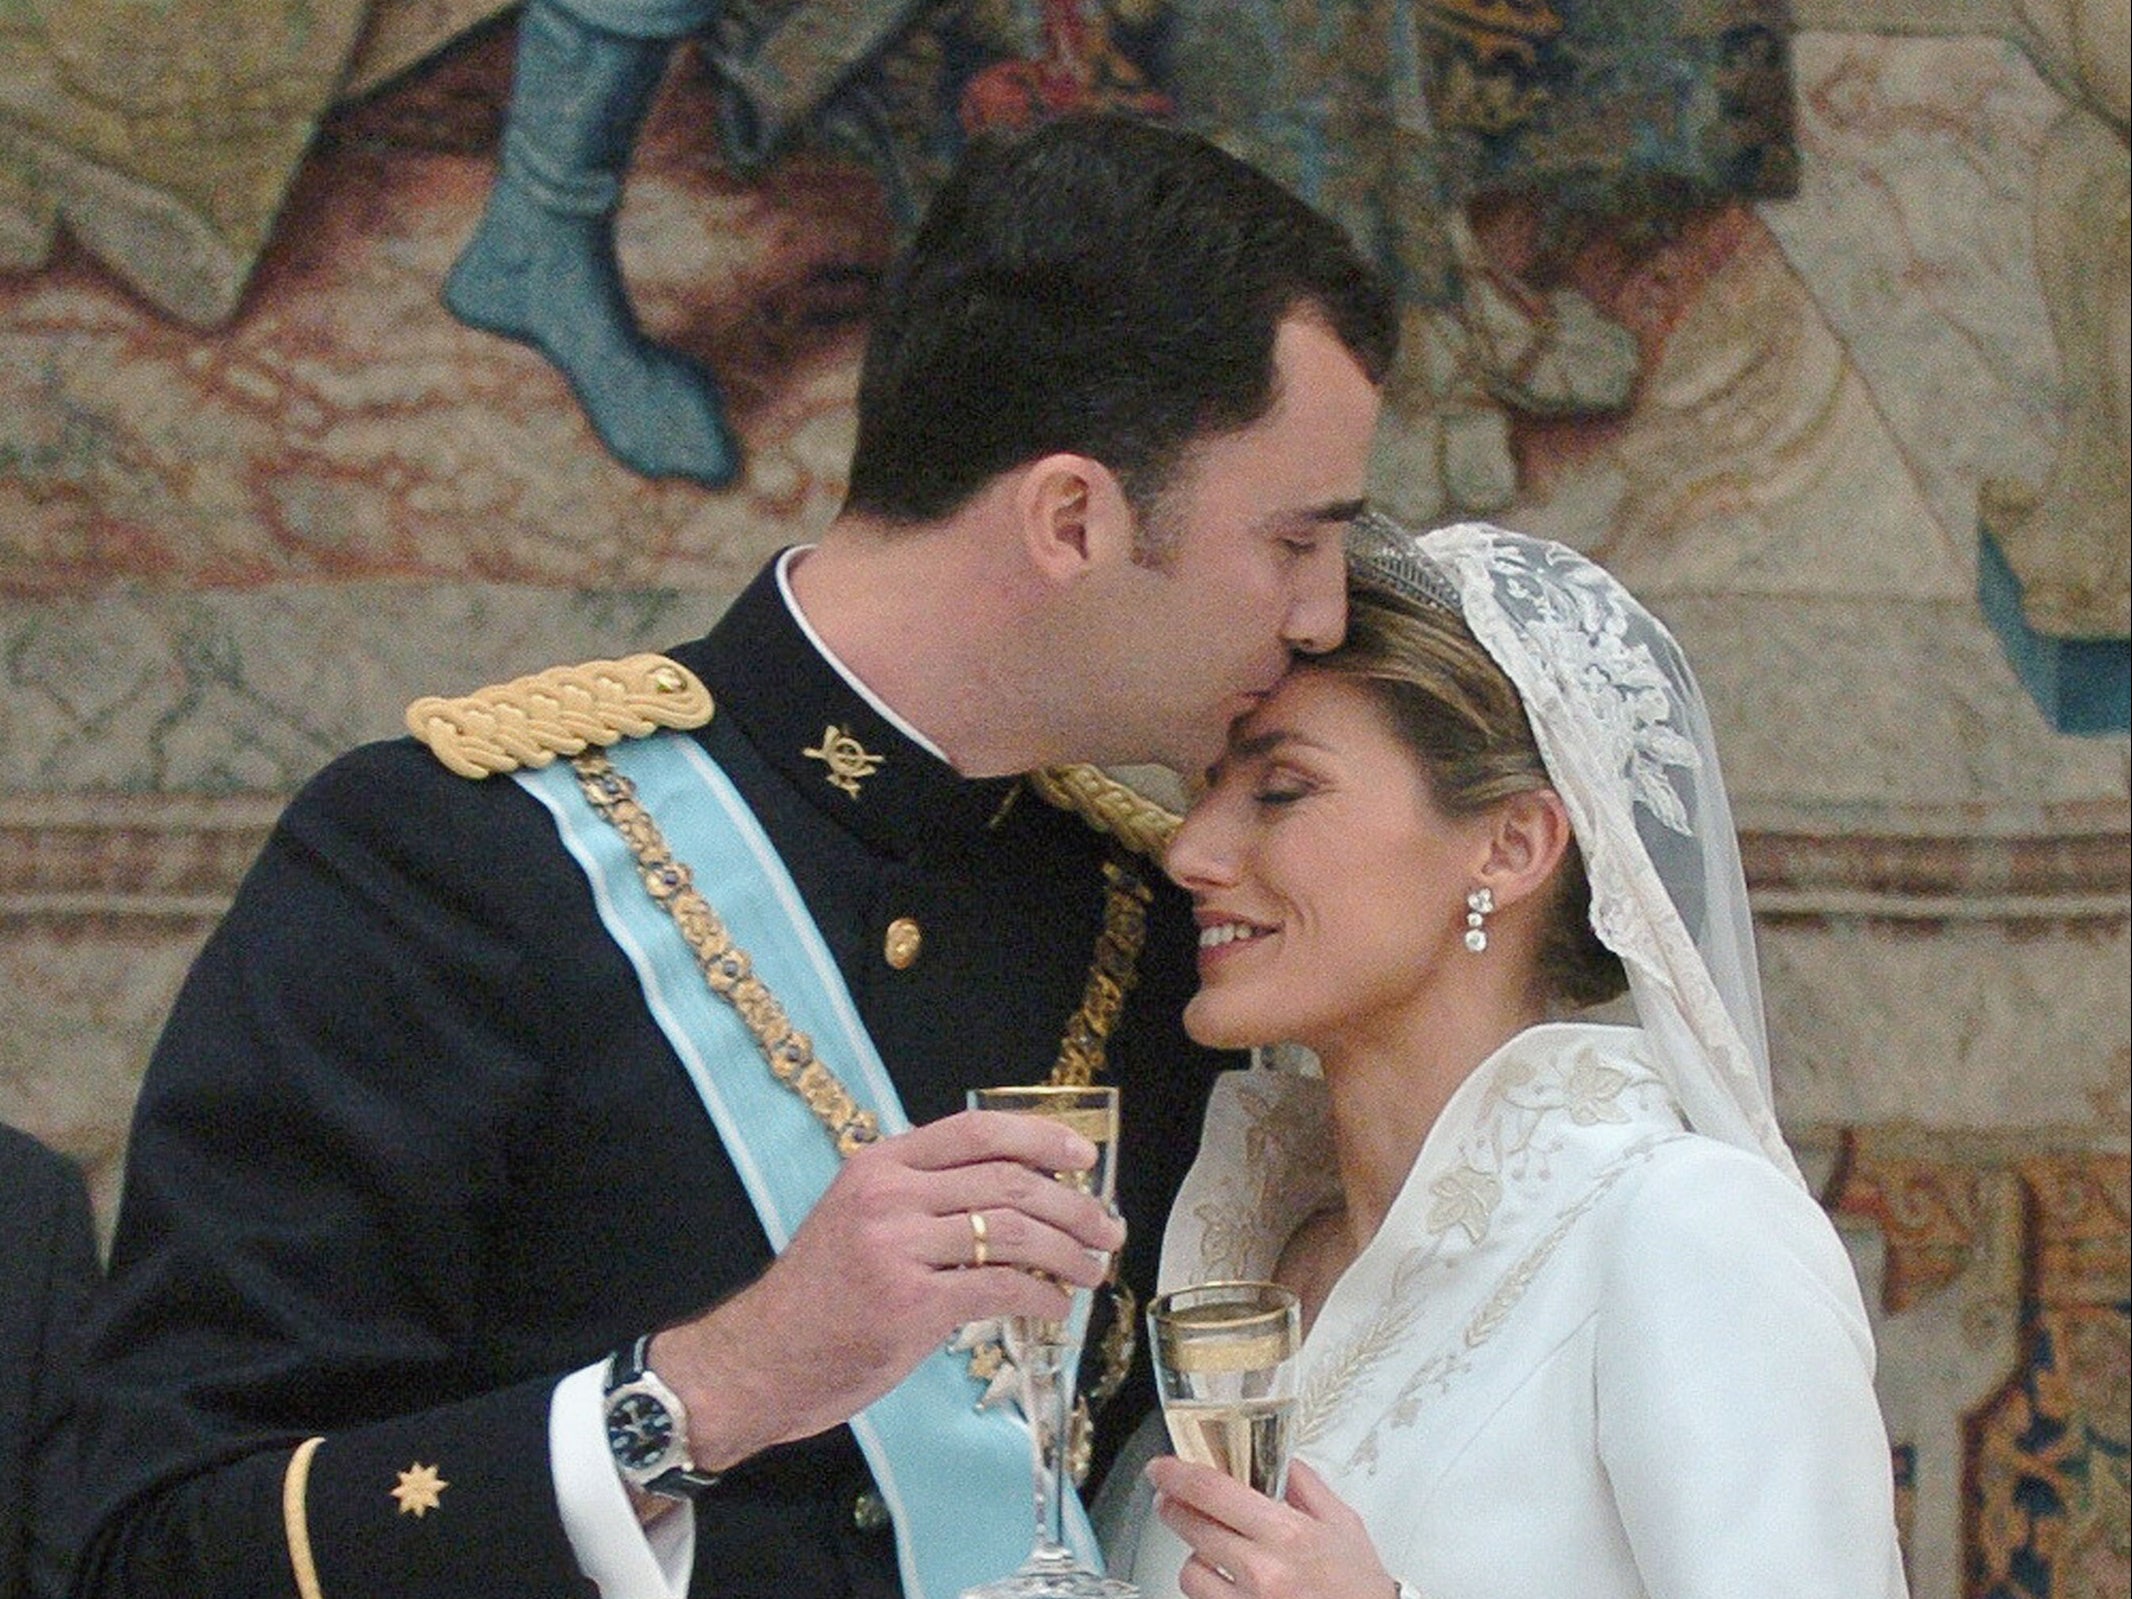 Prince Felipe kisses Letizia Ortiz on their wedding day on 22 May 2004